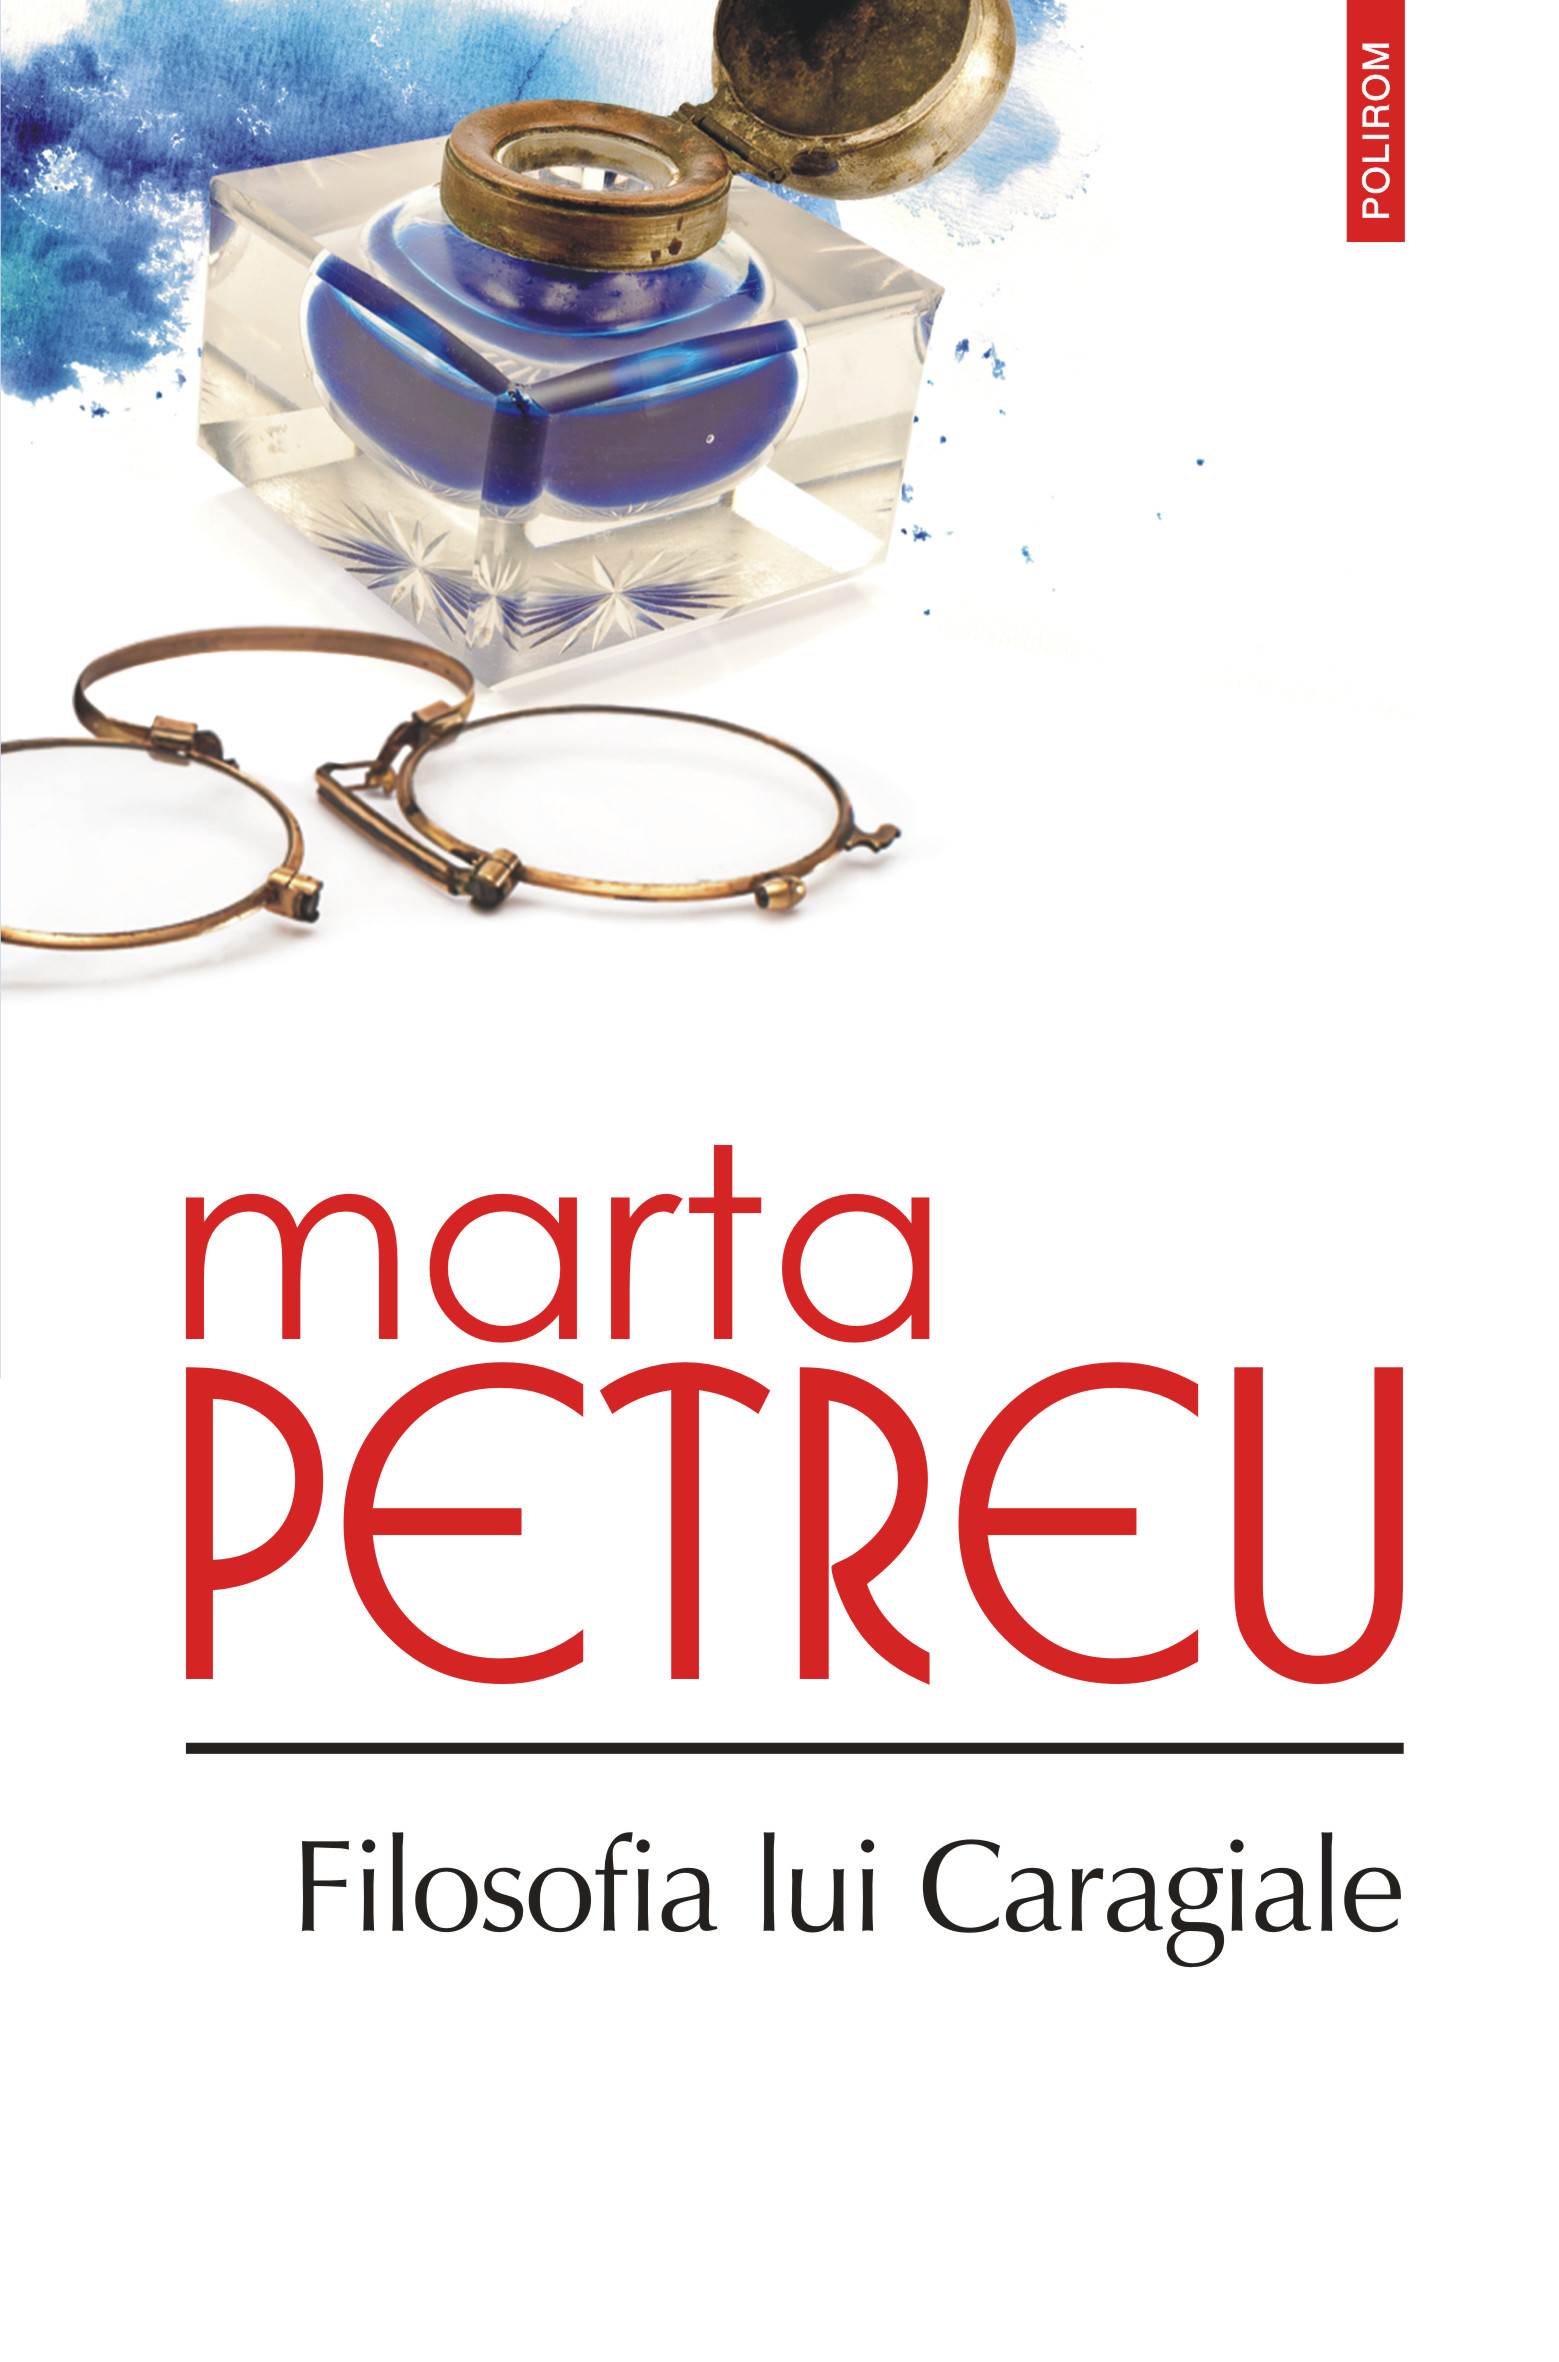 eBook Filosofia lui Caragiale - Marta Petreu